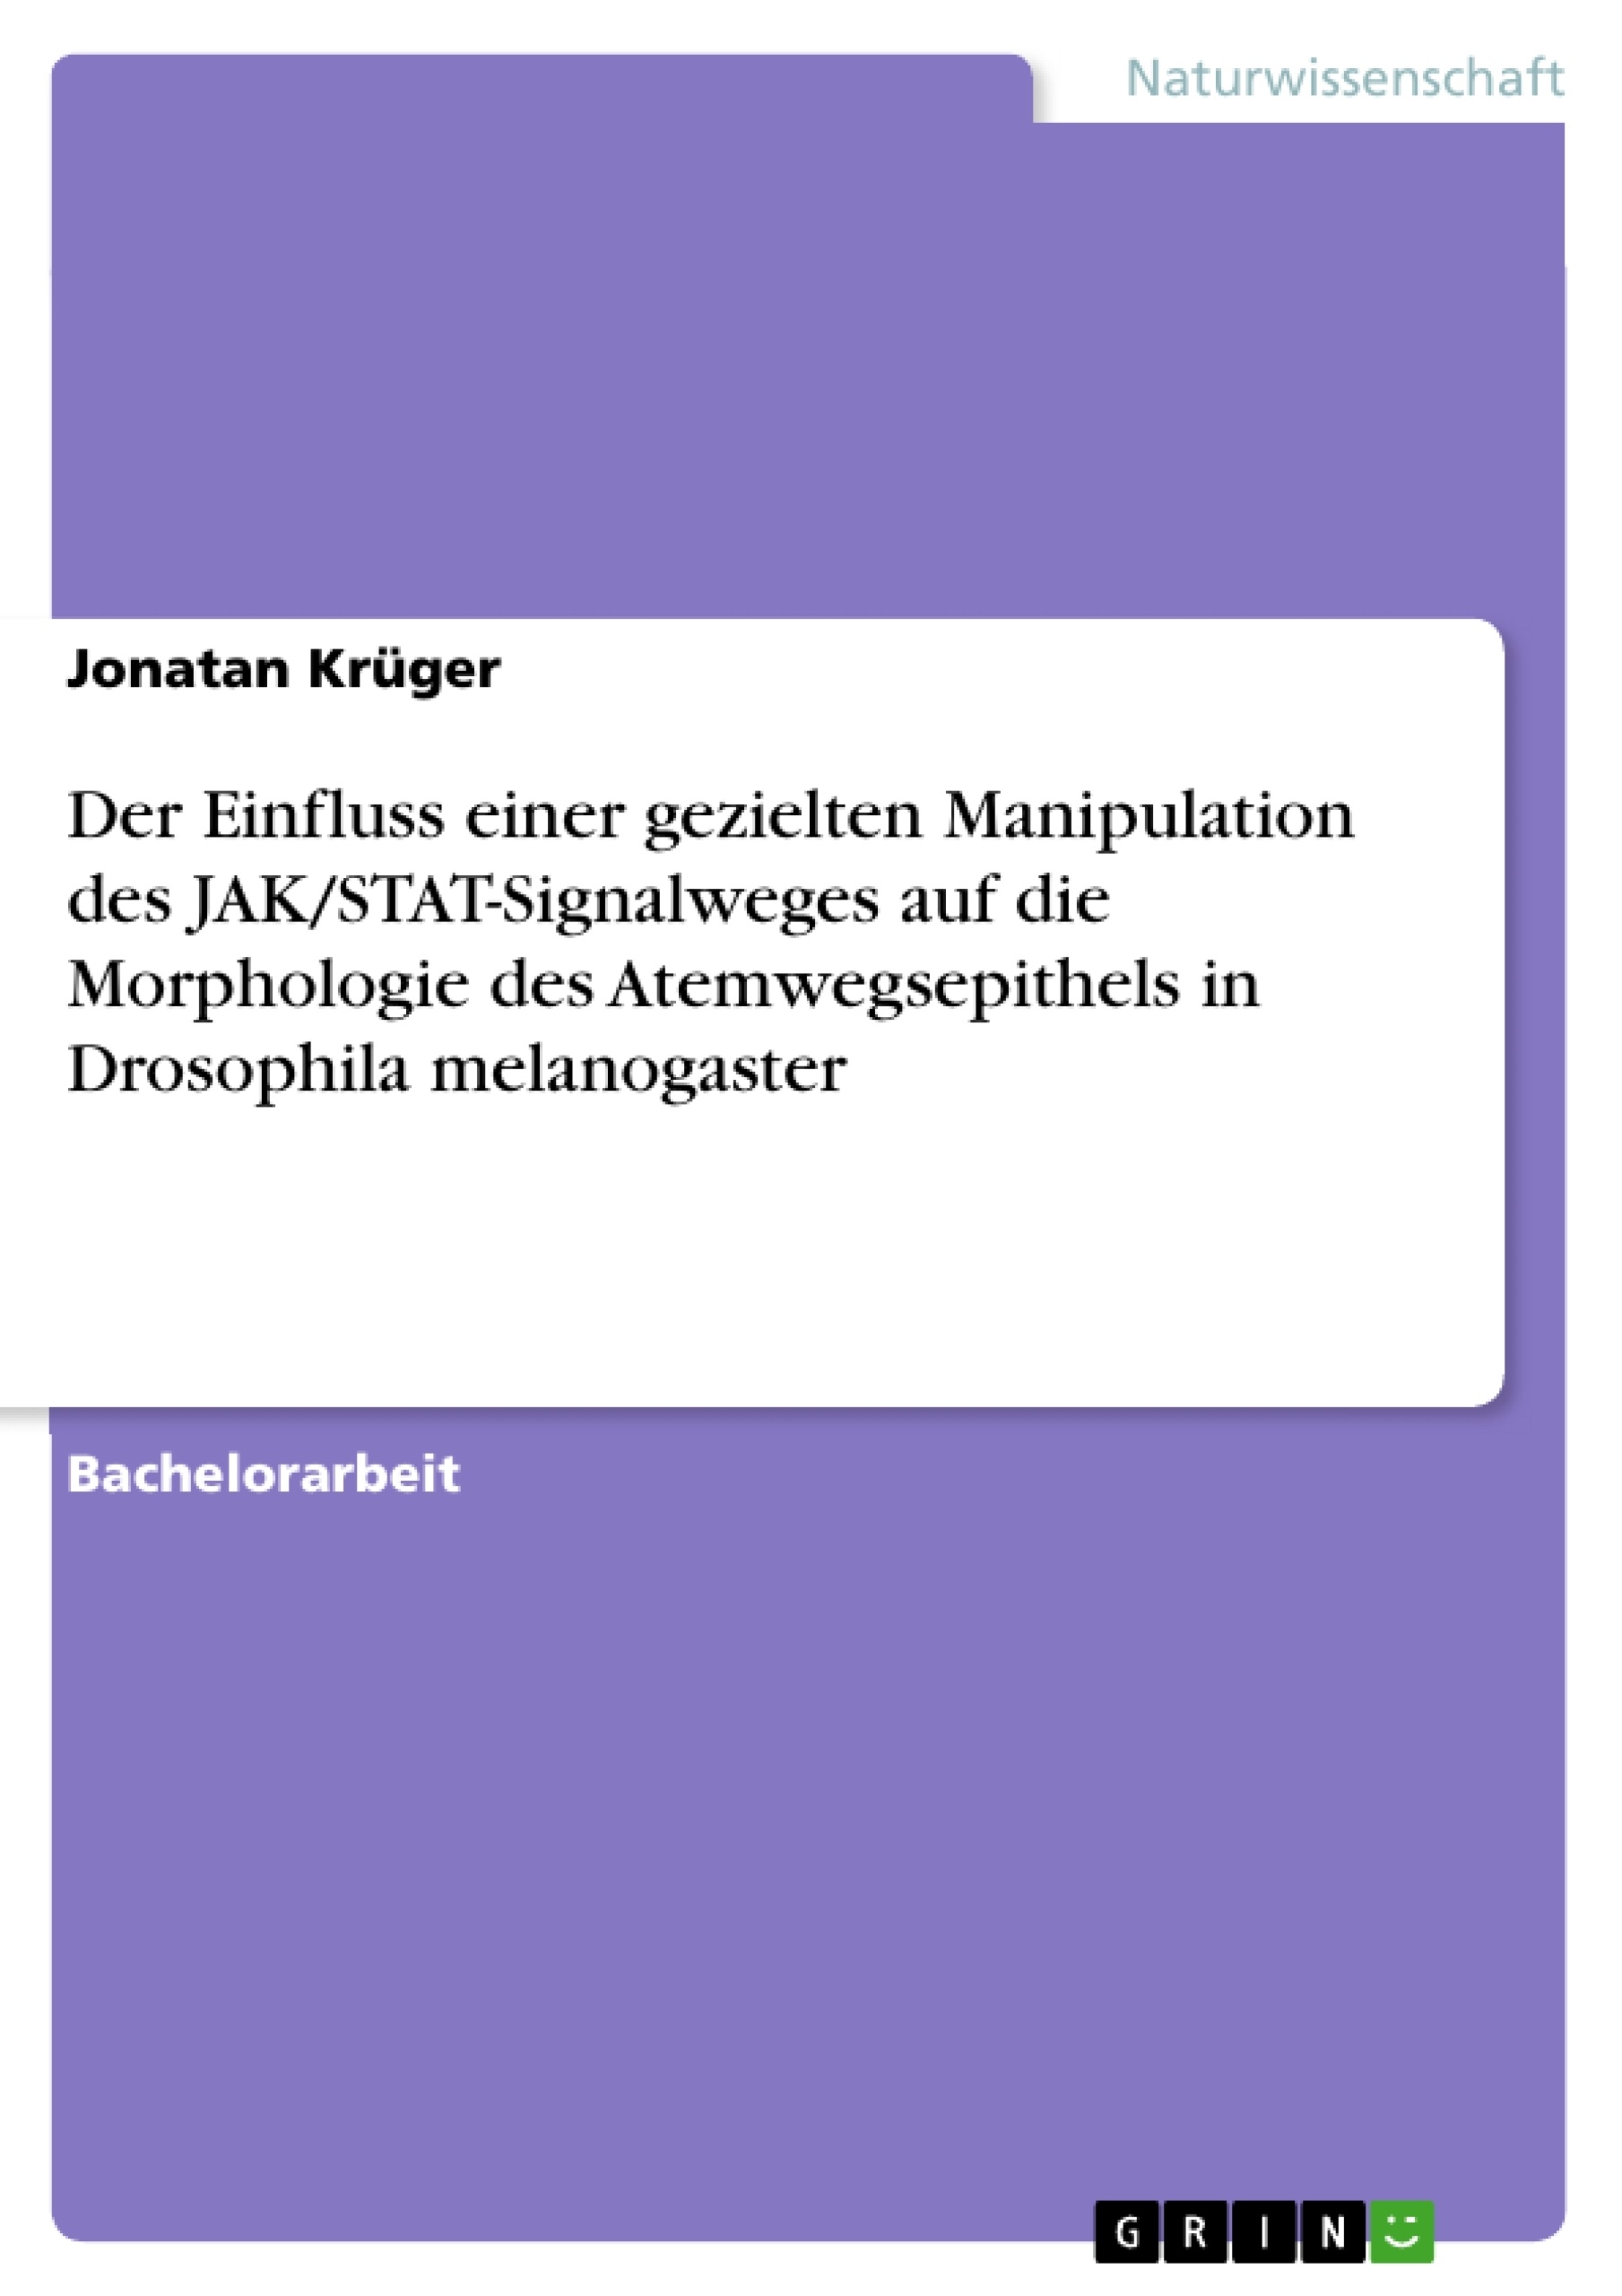 Título: Der Einfluss einer gezielten Manipulation des JAK/STAT-Signalweges auf die Morphologie des Atemwegsepithels in Drosophila melanogaster